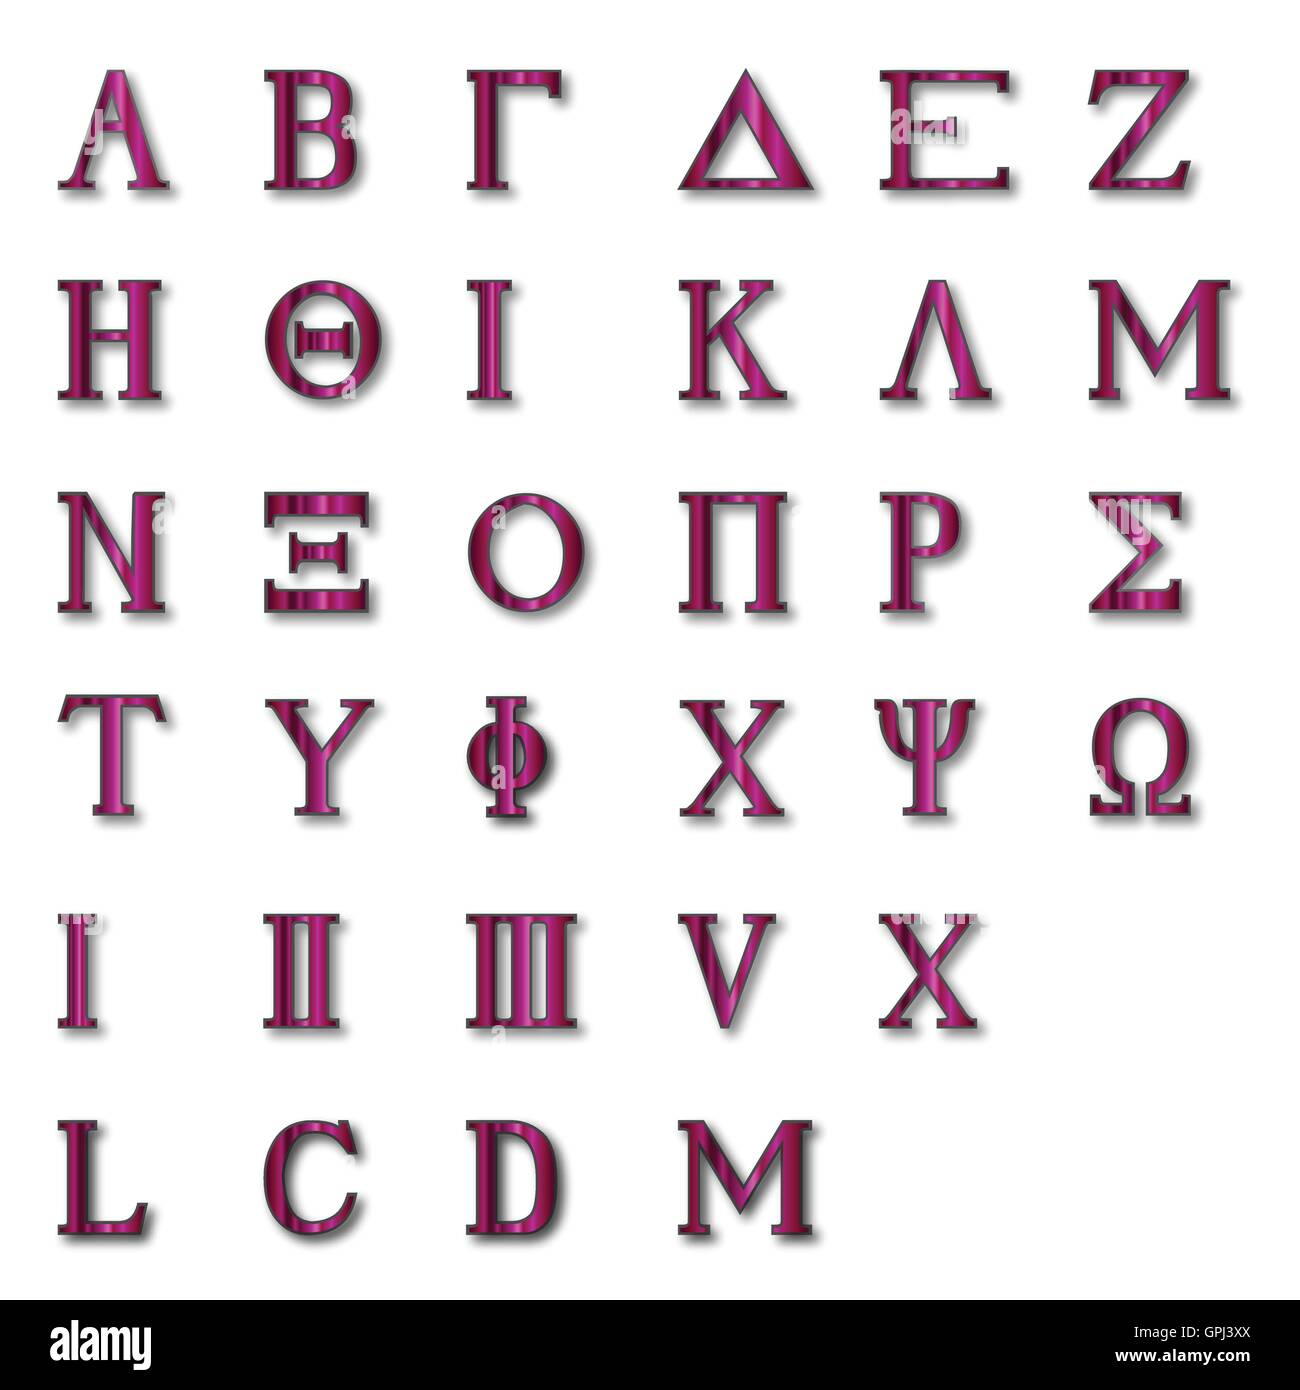 Dernière Lettre De L Alphabet Grec